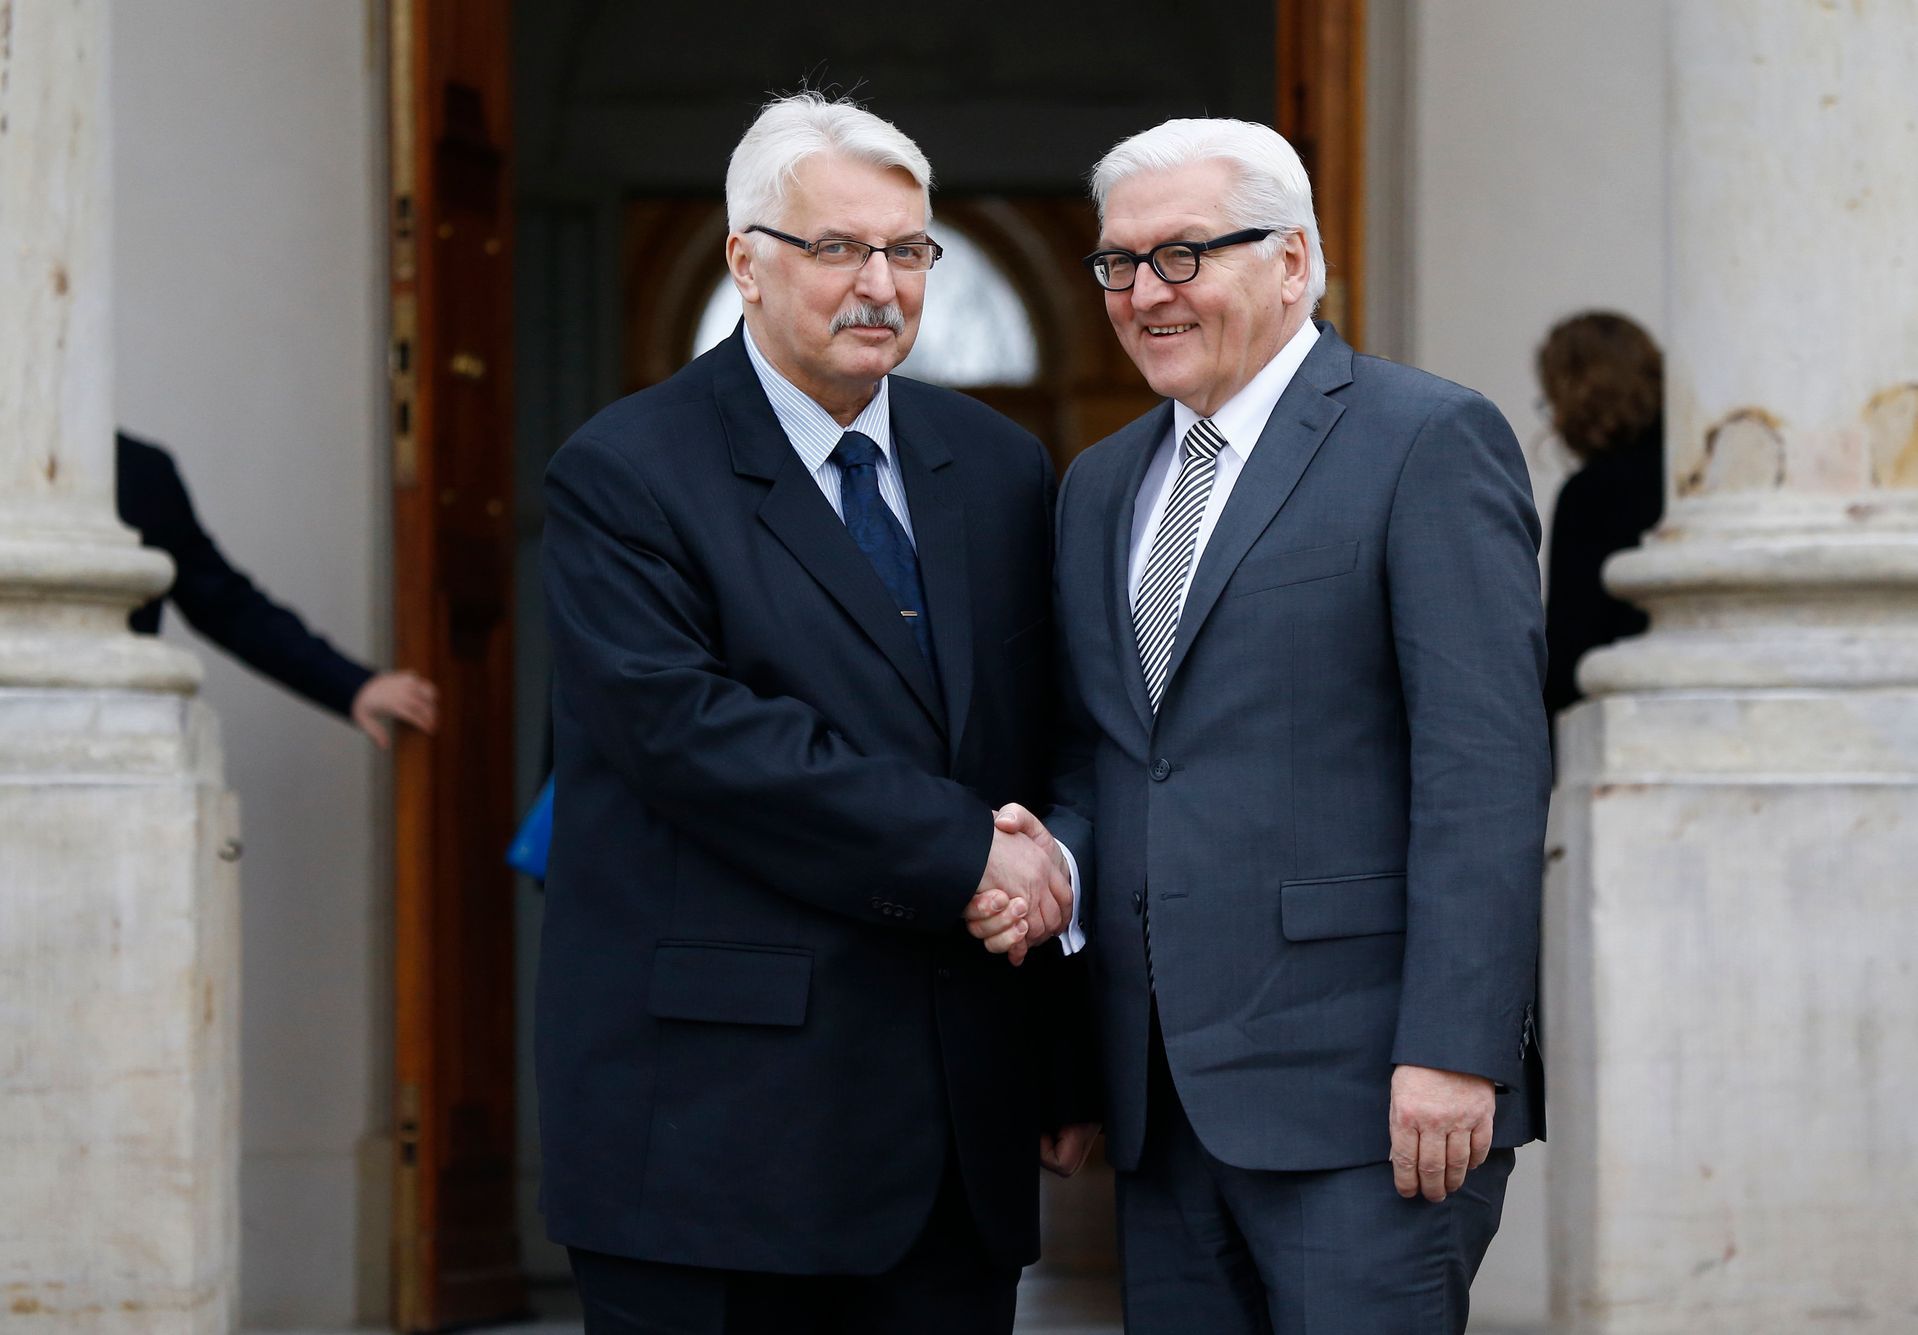 Velké změny v polské vládě. Odejde šéf diplomacie Waszczykowski i ministryně digitalizace, píše web